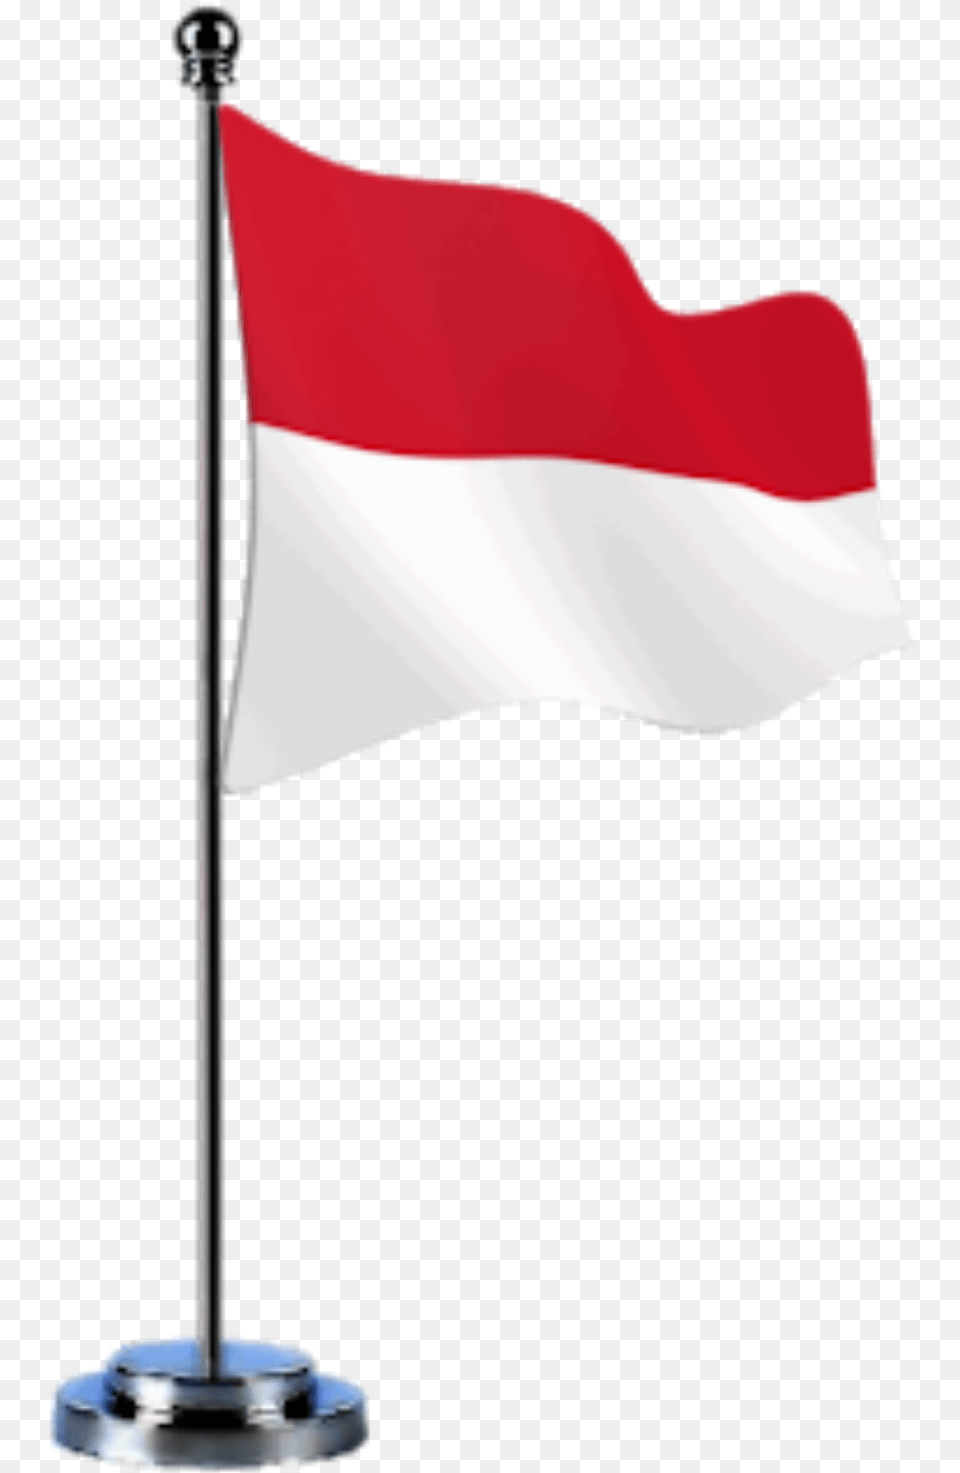 Bendera Merah Putih Vector Hd, Flag, Indonesia Flag Free Transparent Png